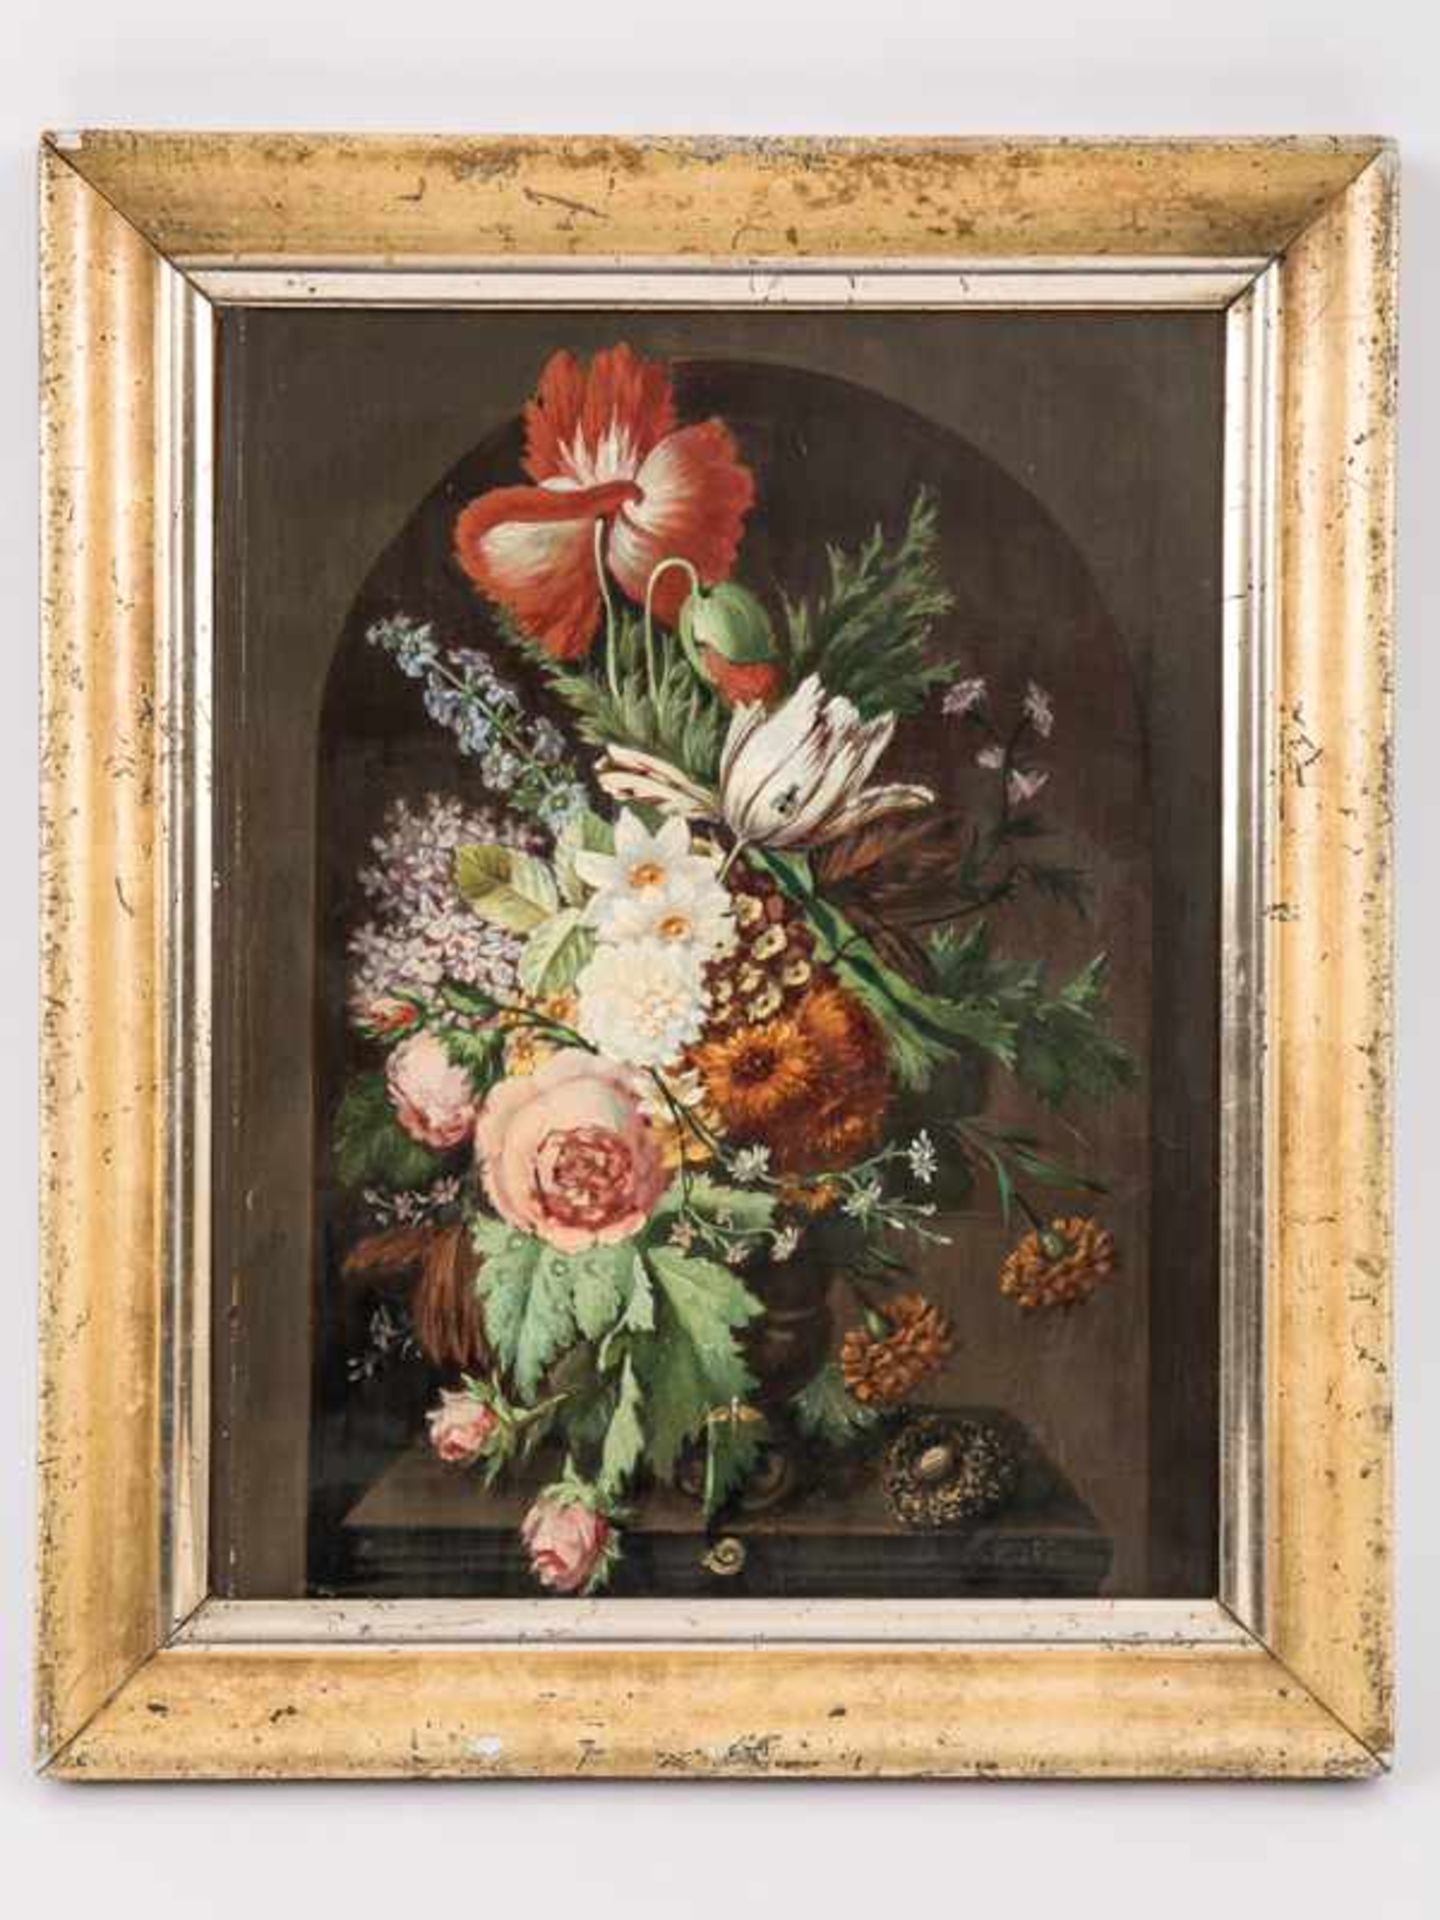 Rohde, Nathalia (dänische Künstlerin des 19. Jh.). Öl auf Holz, "Blumenstilleben in rundbogiger